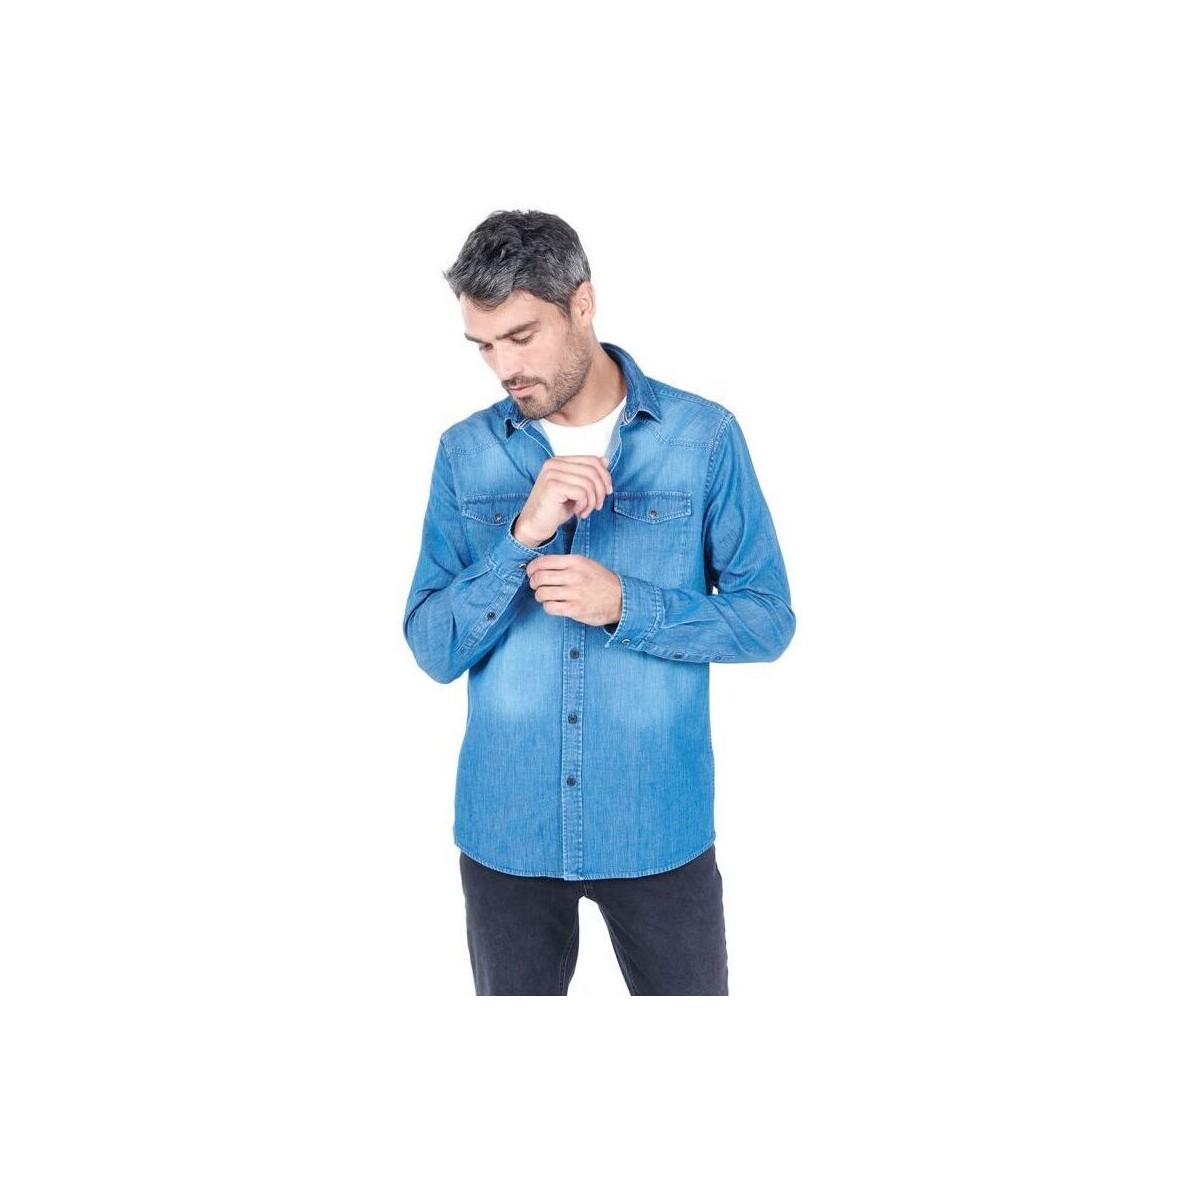 Vêtements Homme Chemises manches longues Jerem CHEMISE Bleu